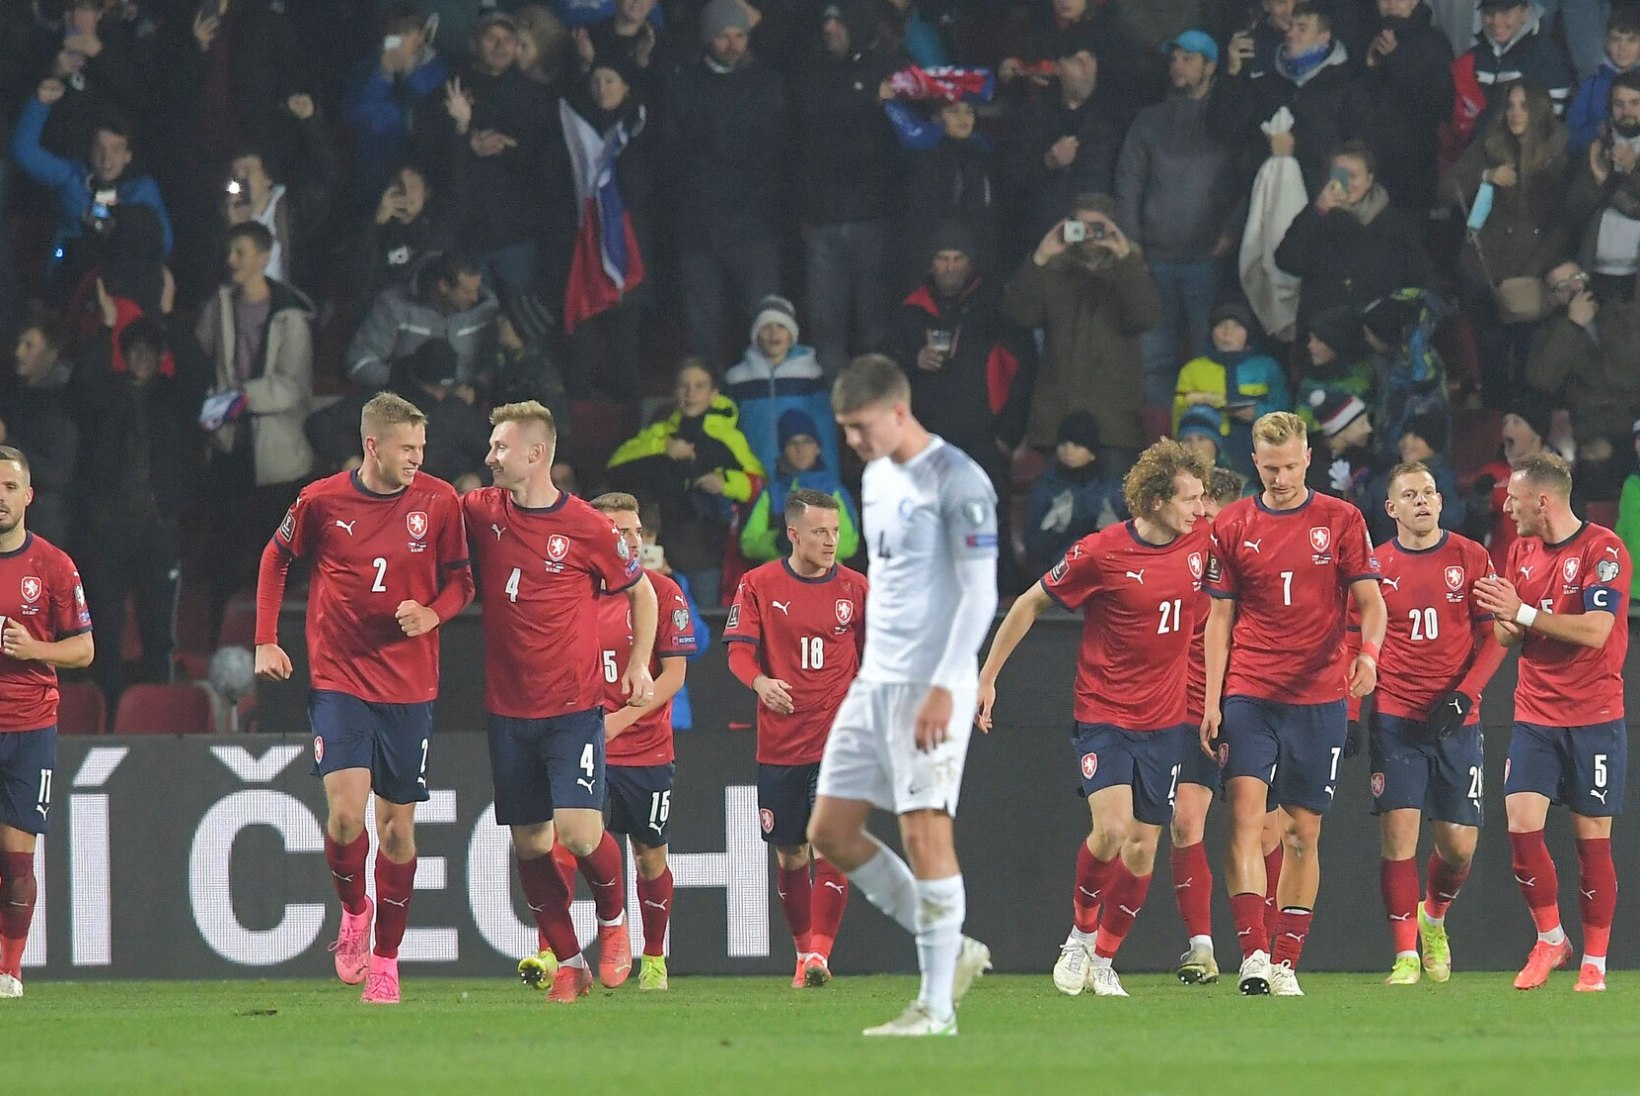 ÕL TŠEHHIS | Eesti jalgpallikoondise kindel kaotus, aga lootus tuleviku ees säilis